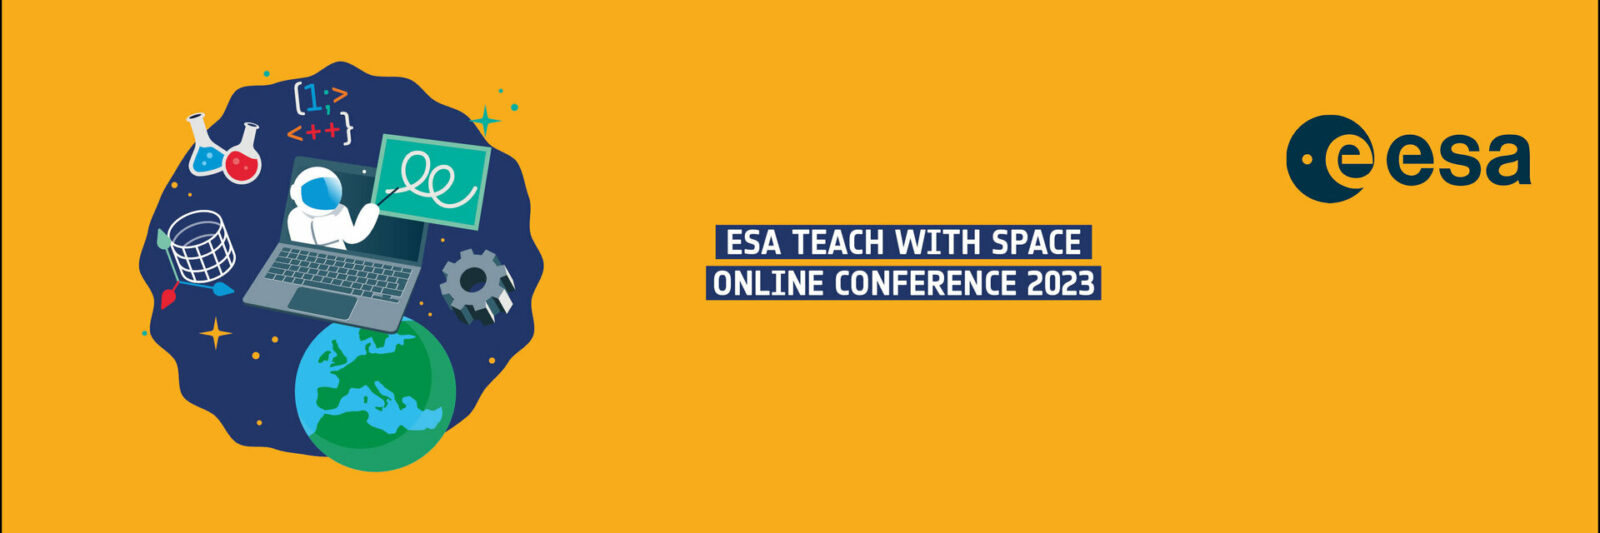 Conférence « Teach with Space » de l’ESA 2023 : Inscription et programme